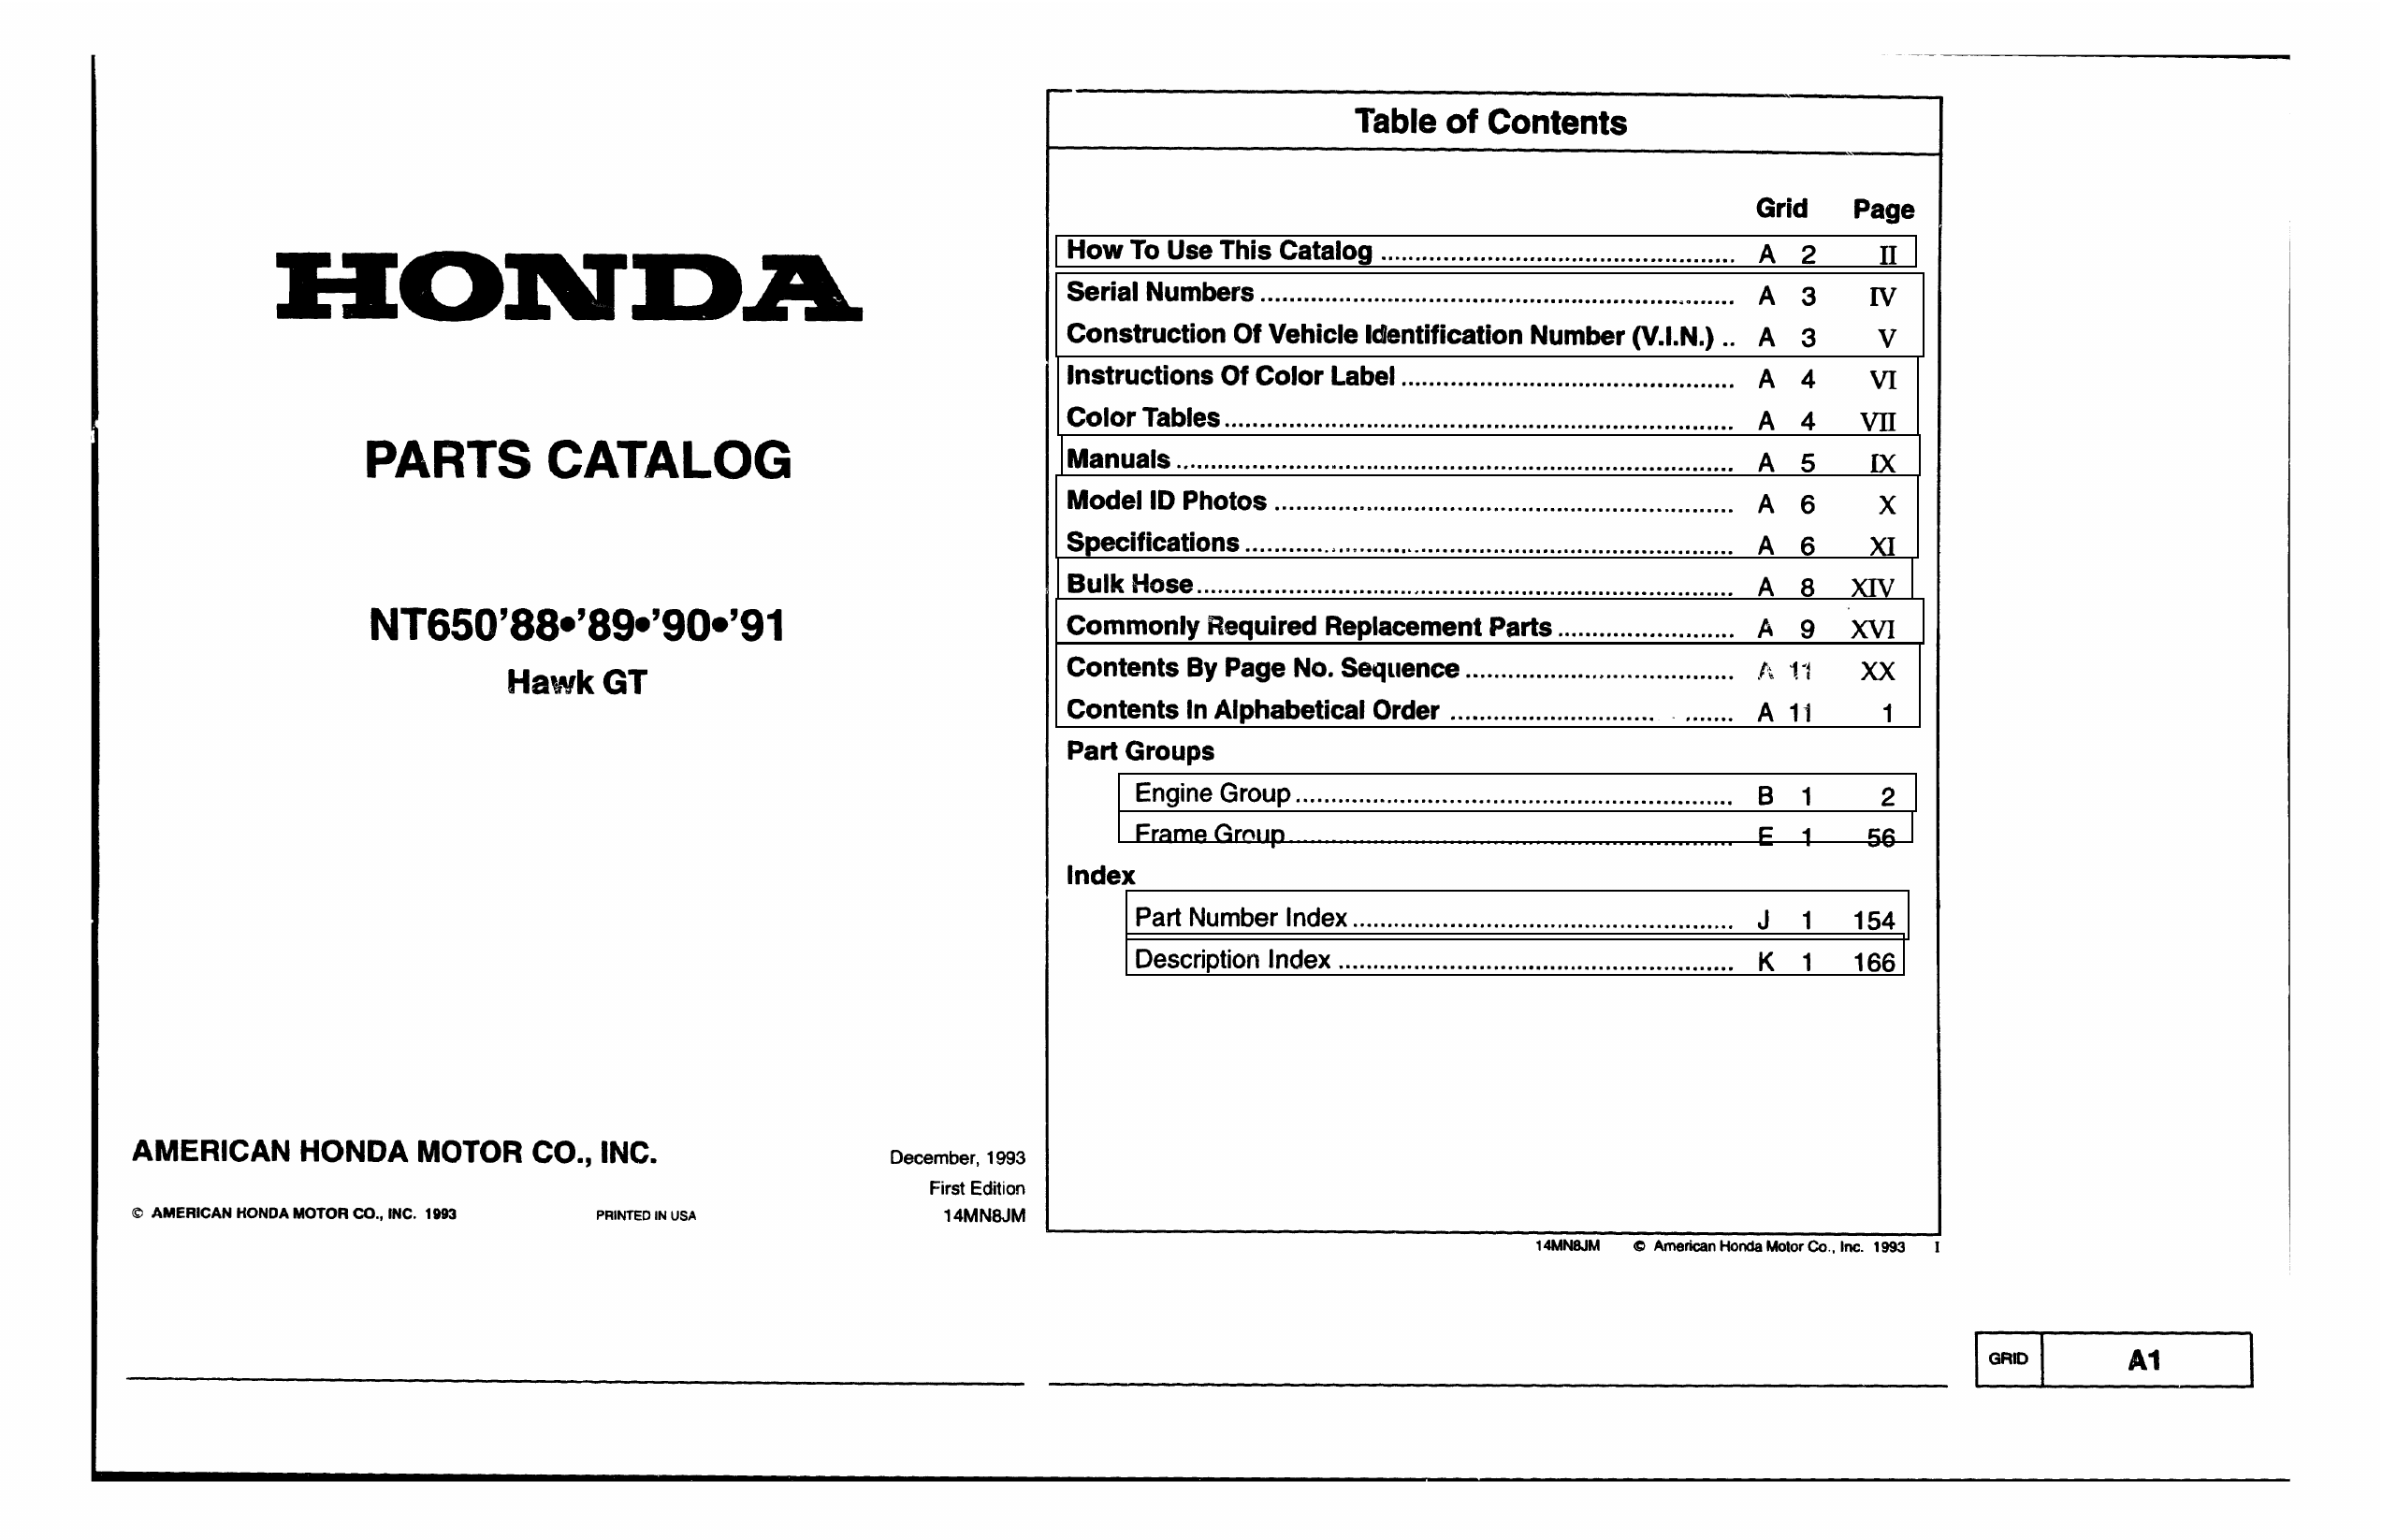 1988-1991 Honda NT650 GT, Hawk GT parts catalog Preview image 2